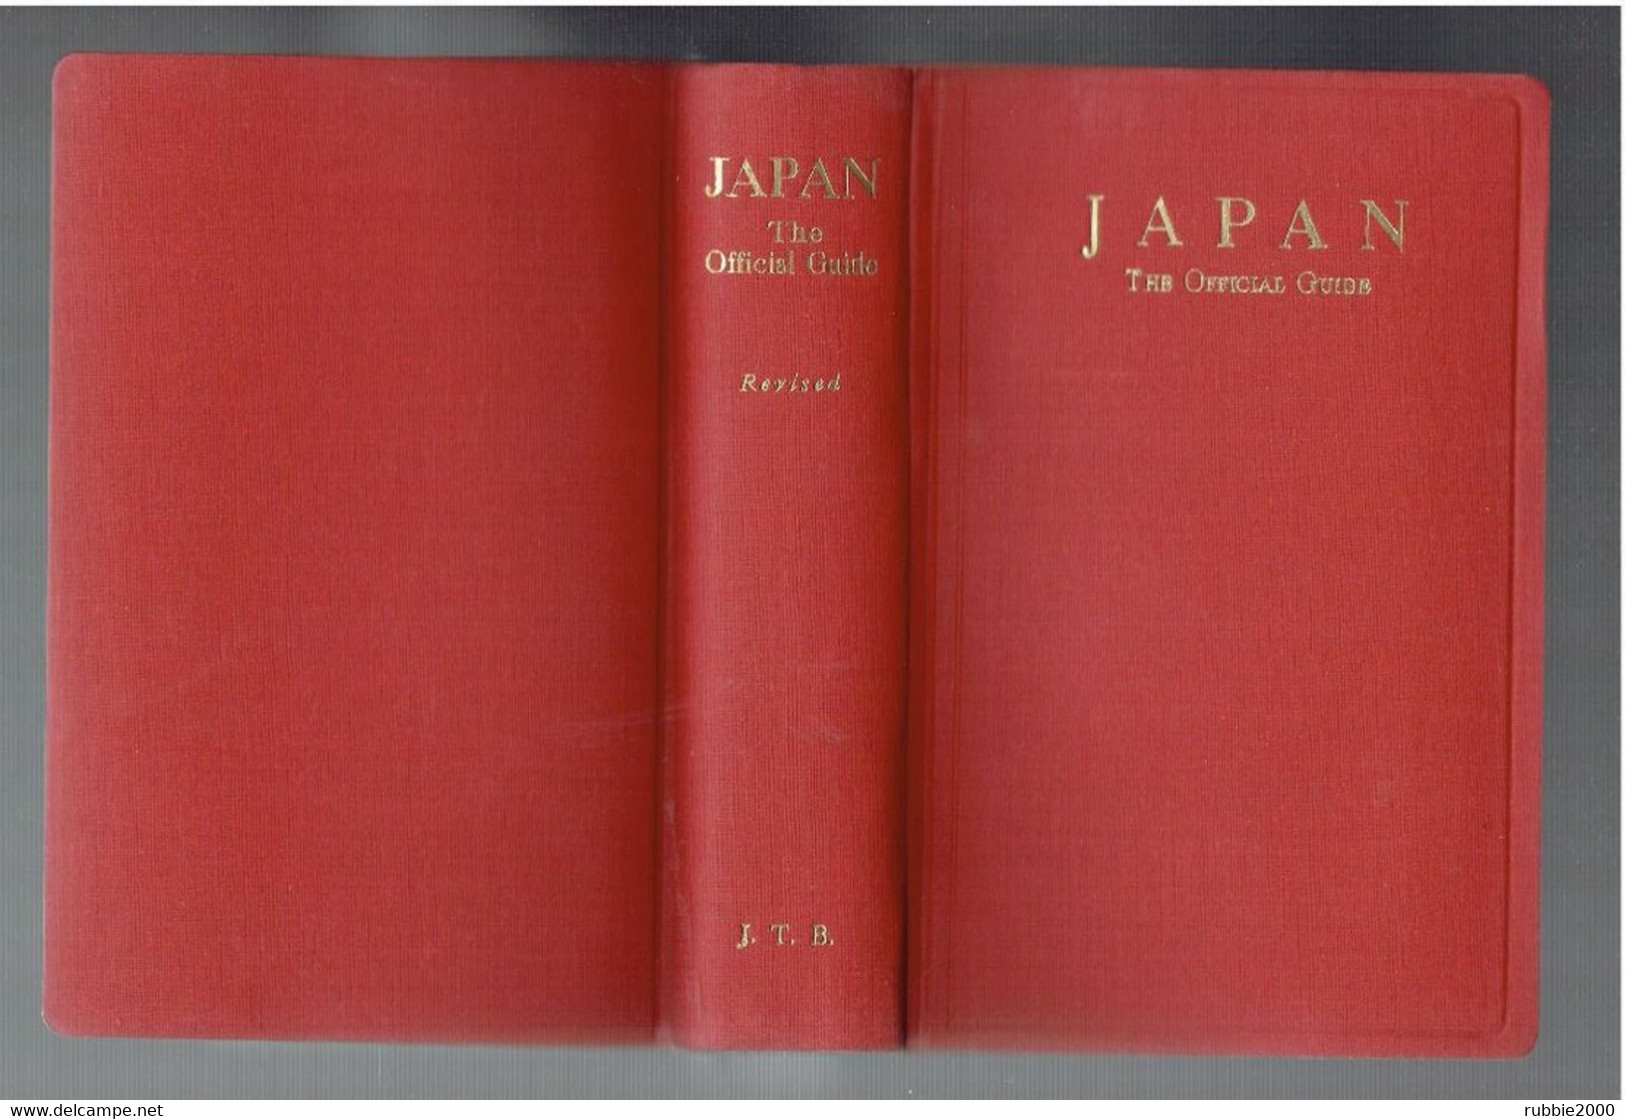 JAPAN 1959 THE OFFICIAL GUIDE BY JAPAN TRAVEL BUREAU JAPON GUIDE TOURISTIQUE OFFICIEL - Asiatica